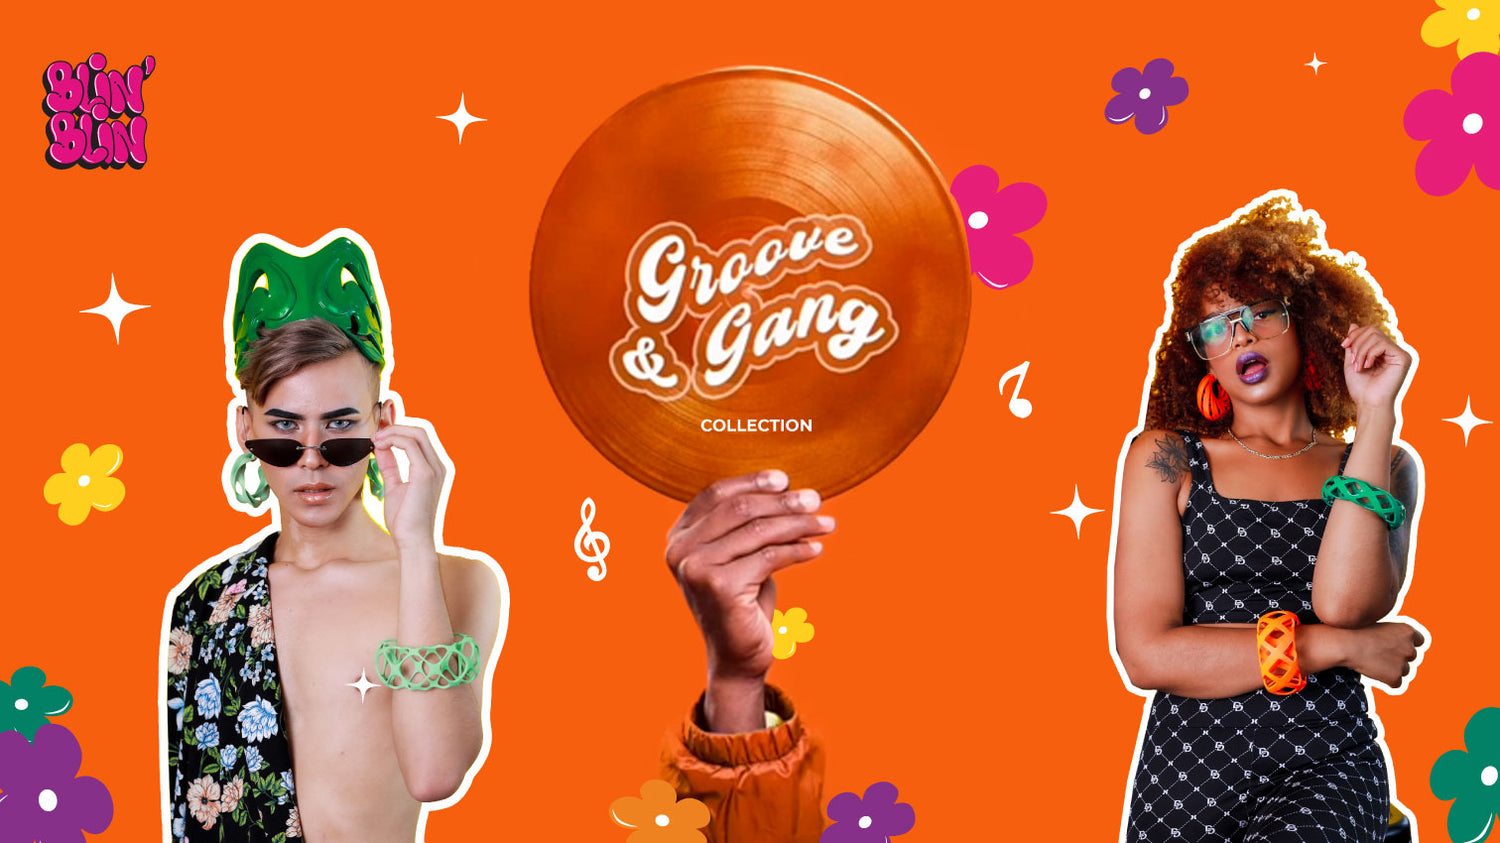 groove and gang coleccion joyeria 3d inspirada en la música